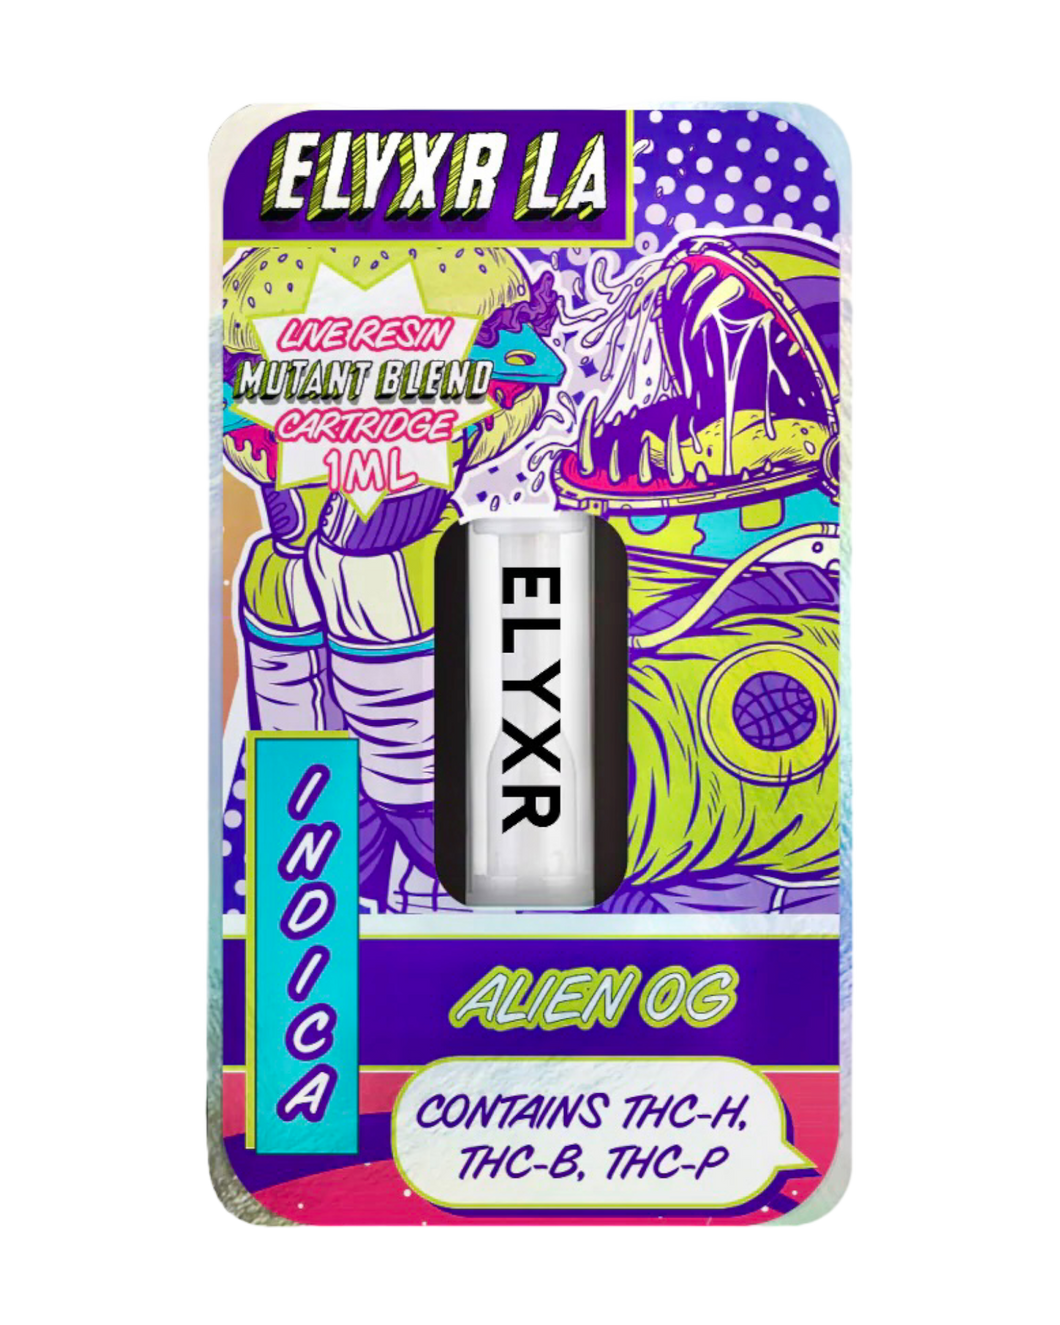 An Indica Alien OG Elyxr LA Live Resin Mutant Blend (THC-P, THC-B, THC-H) Cartridge (1 gram/1mL).